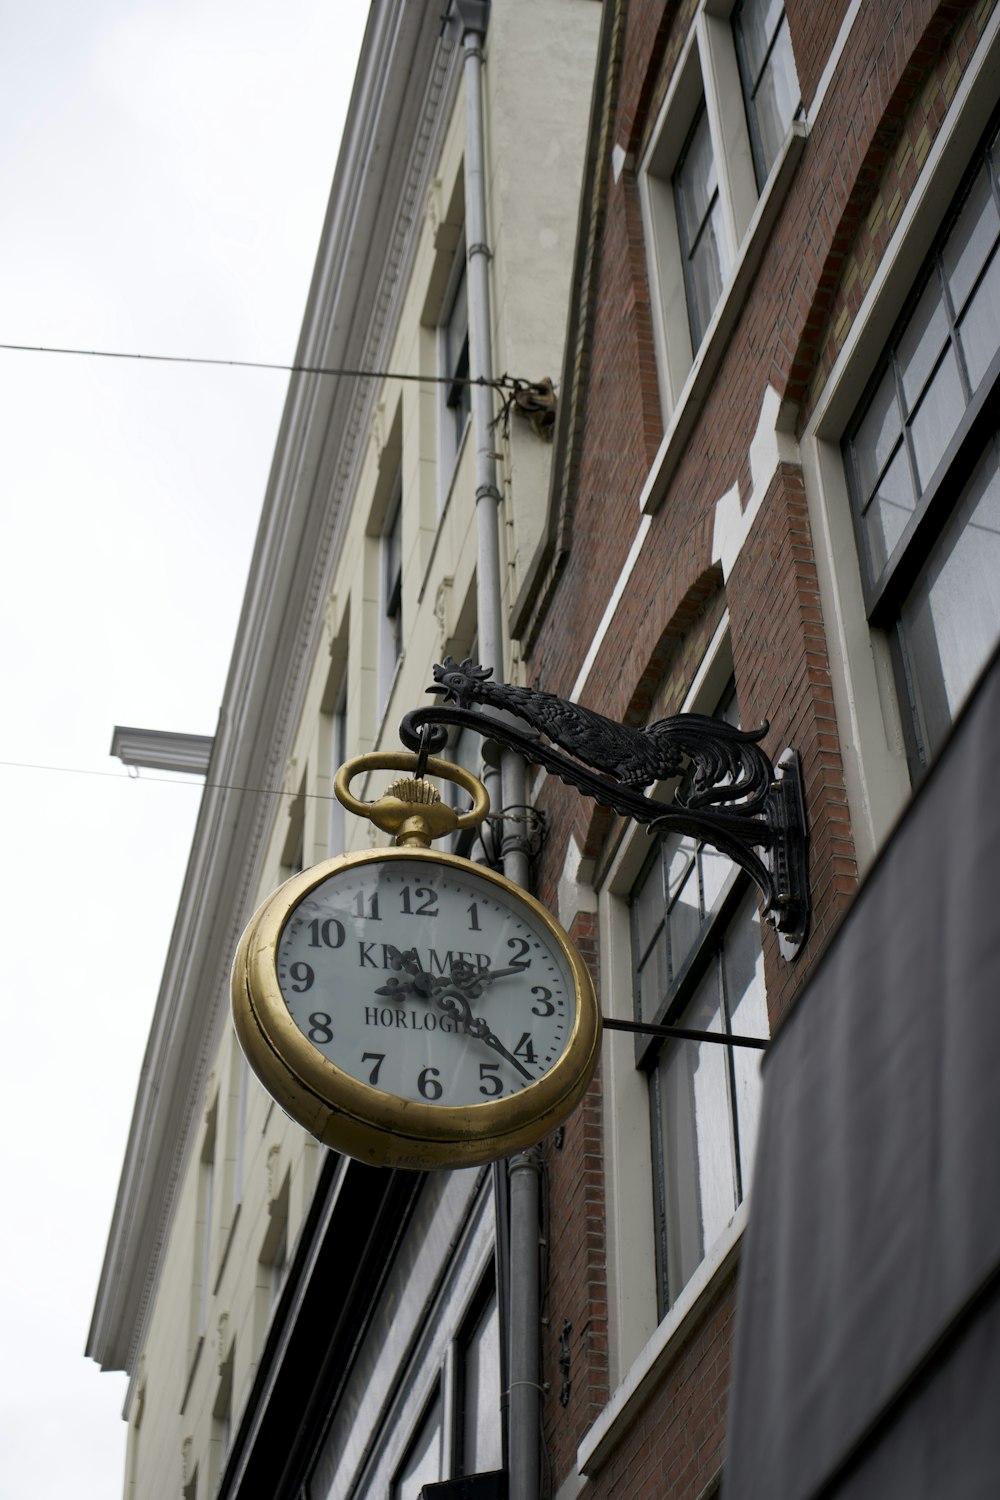 a bird on a clock